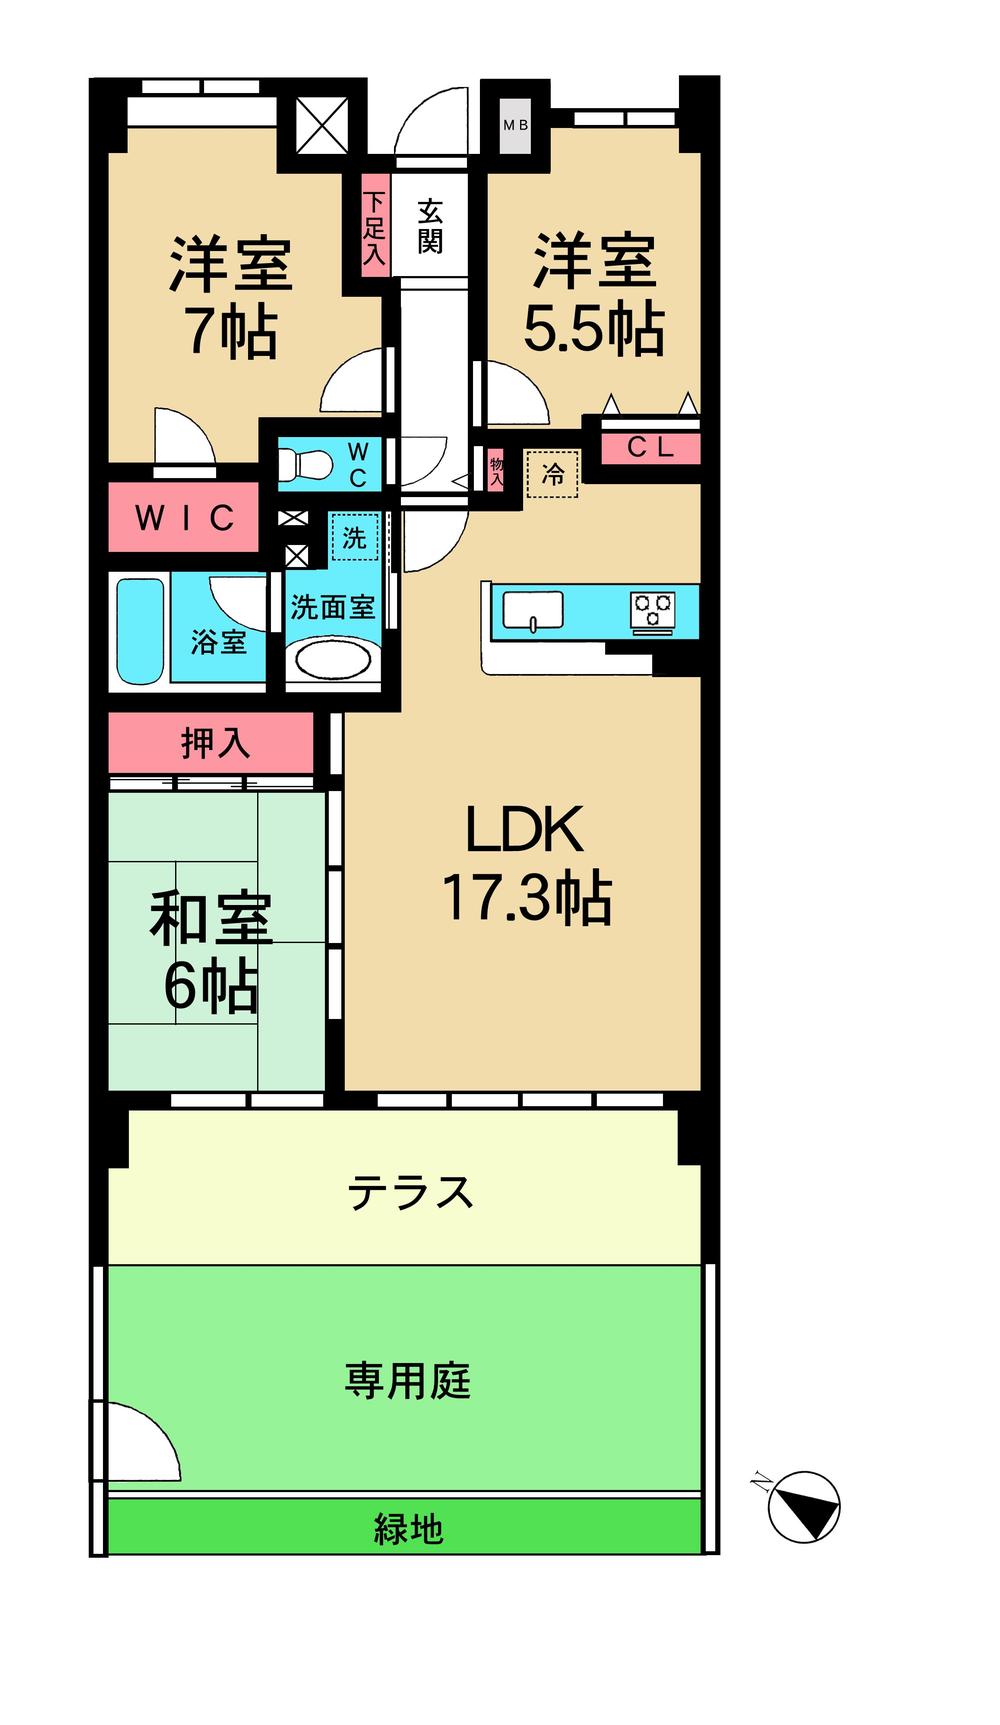 Floor plan. 3LDK, Price 22,800,000 yen, Occupied area 77.24 sq m